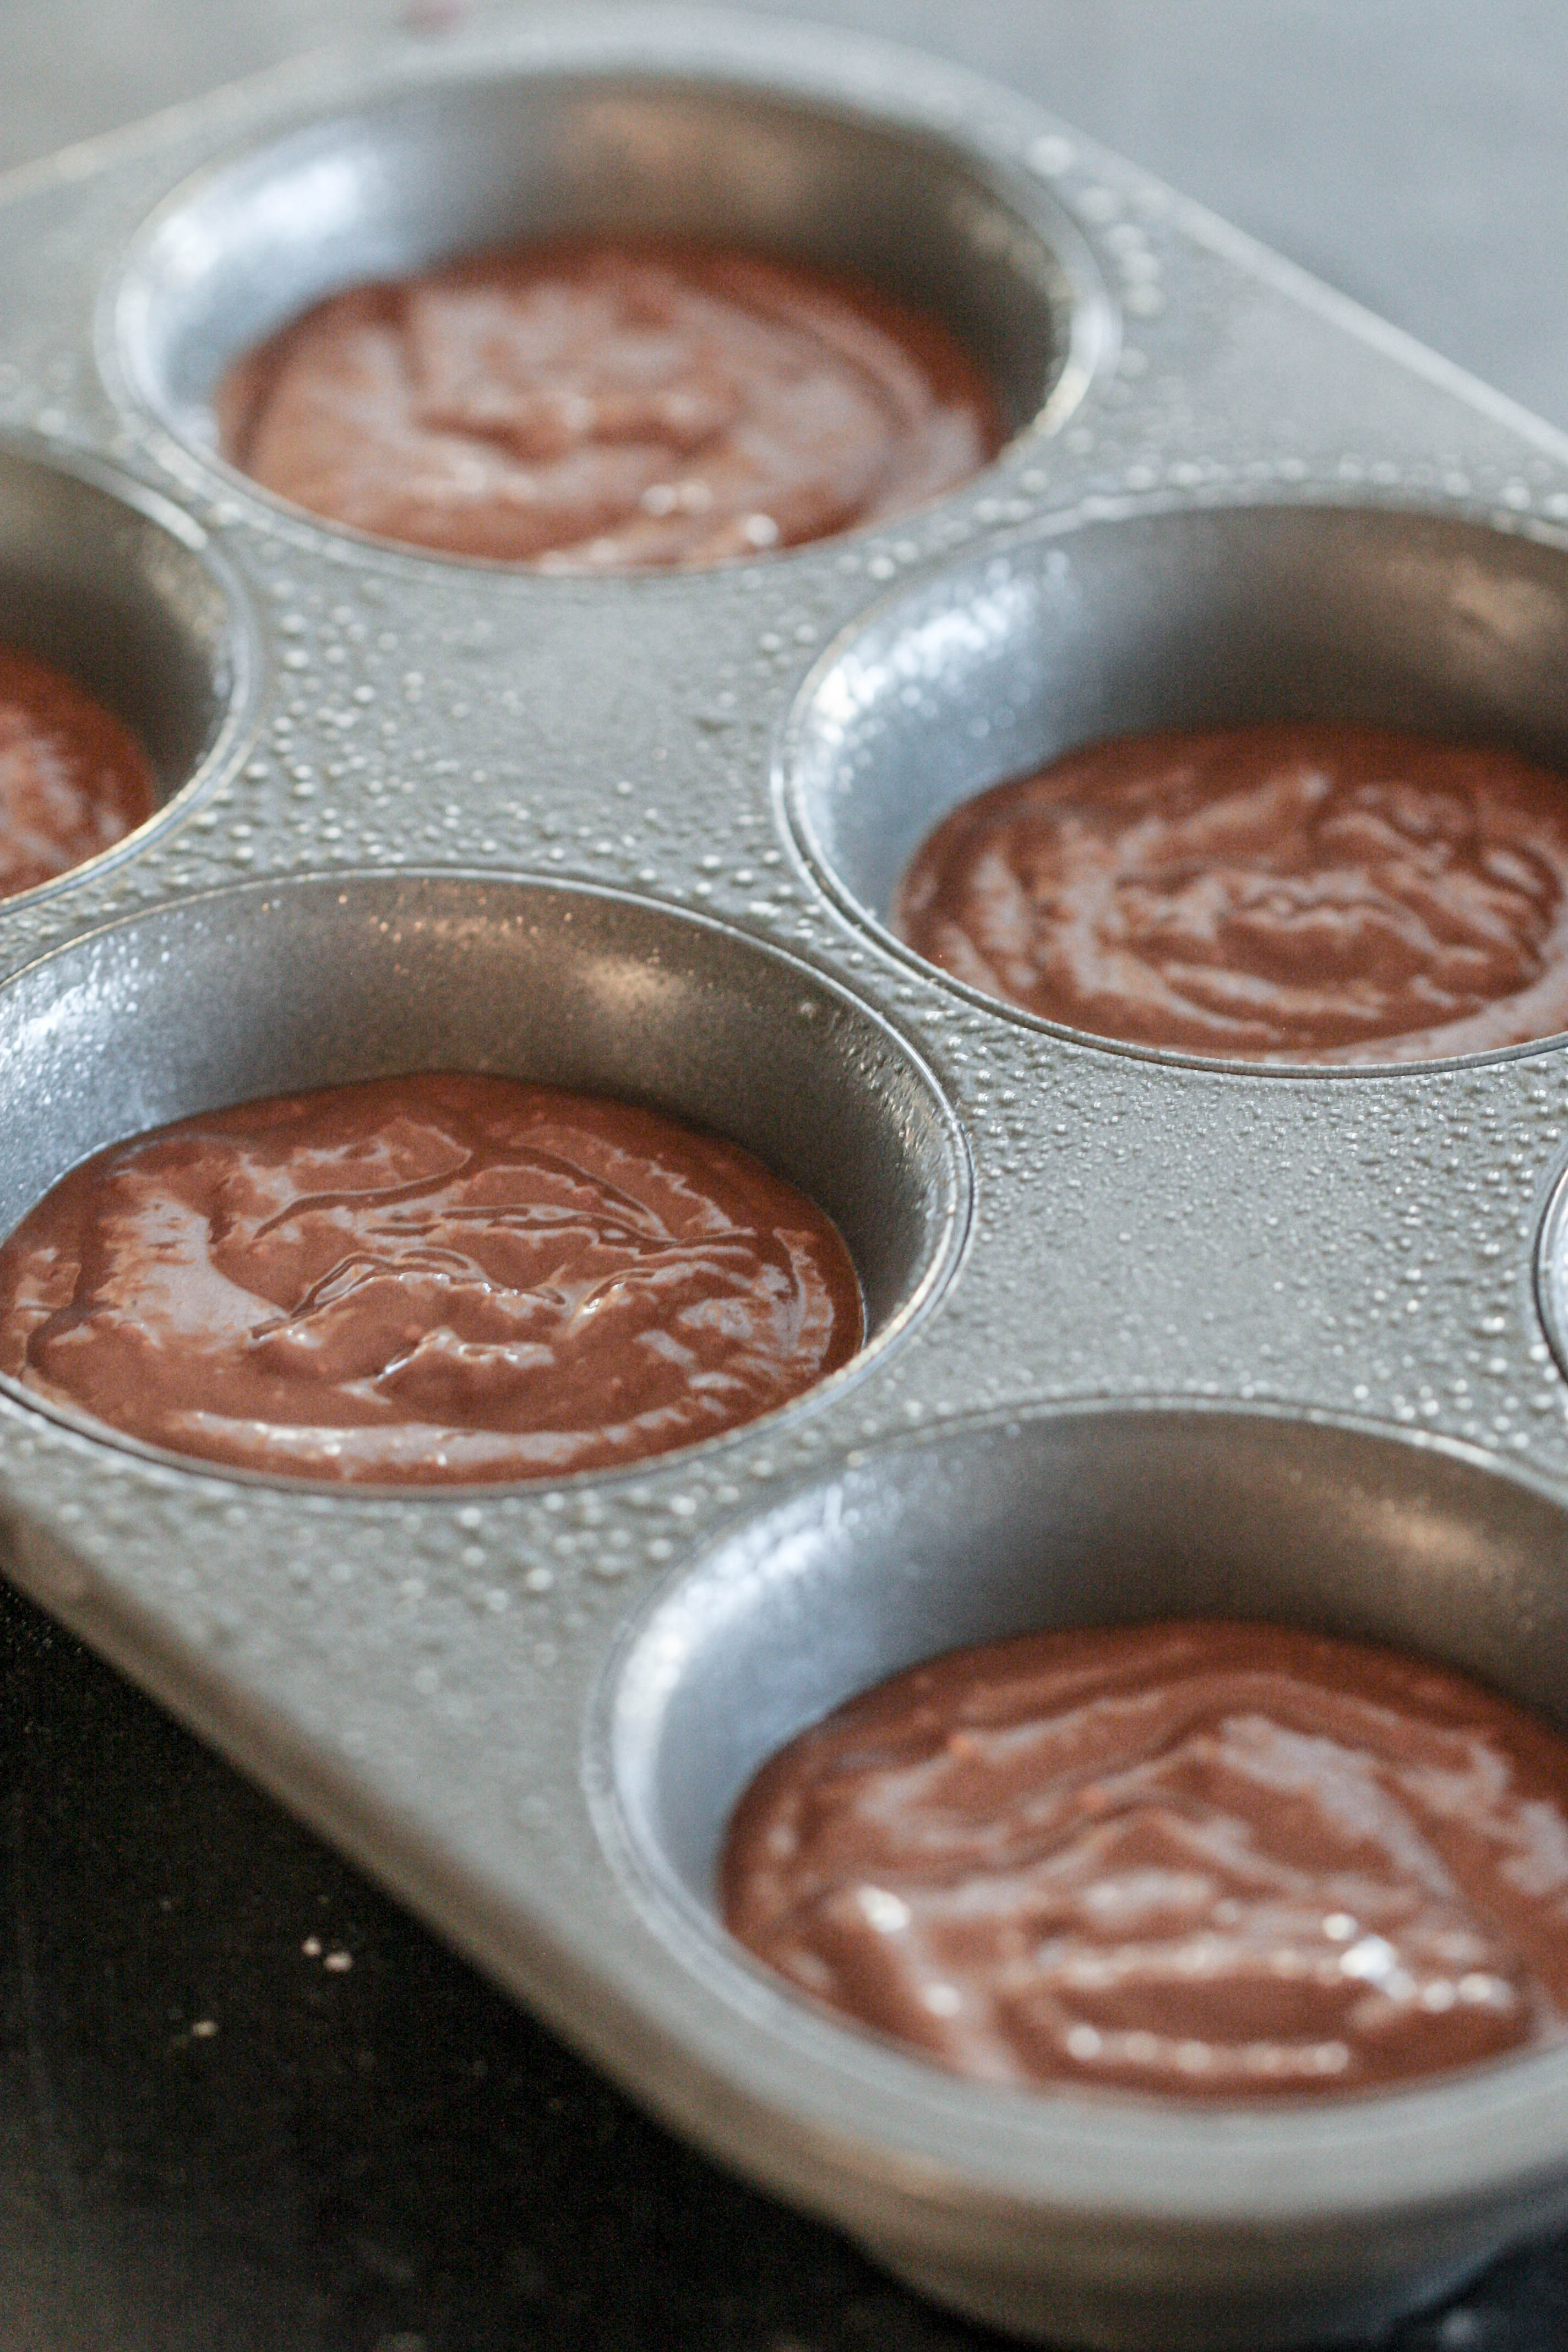 Chocolate Banana Blender Muffin batter in muffin pan